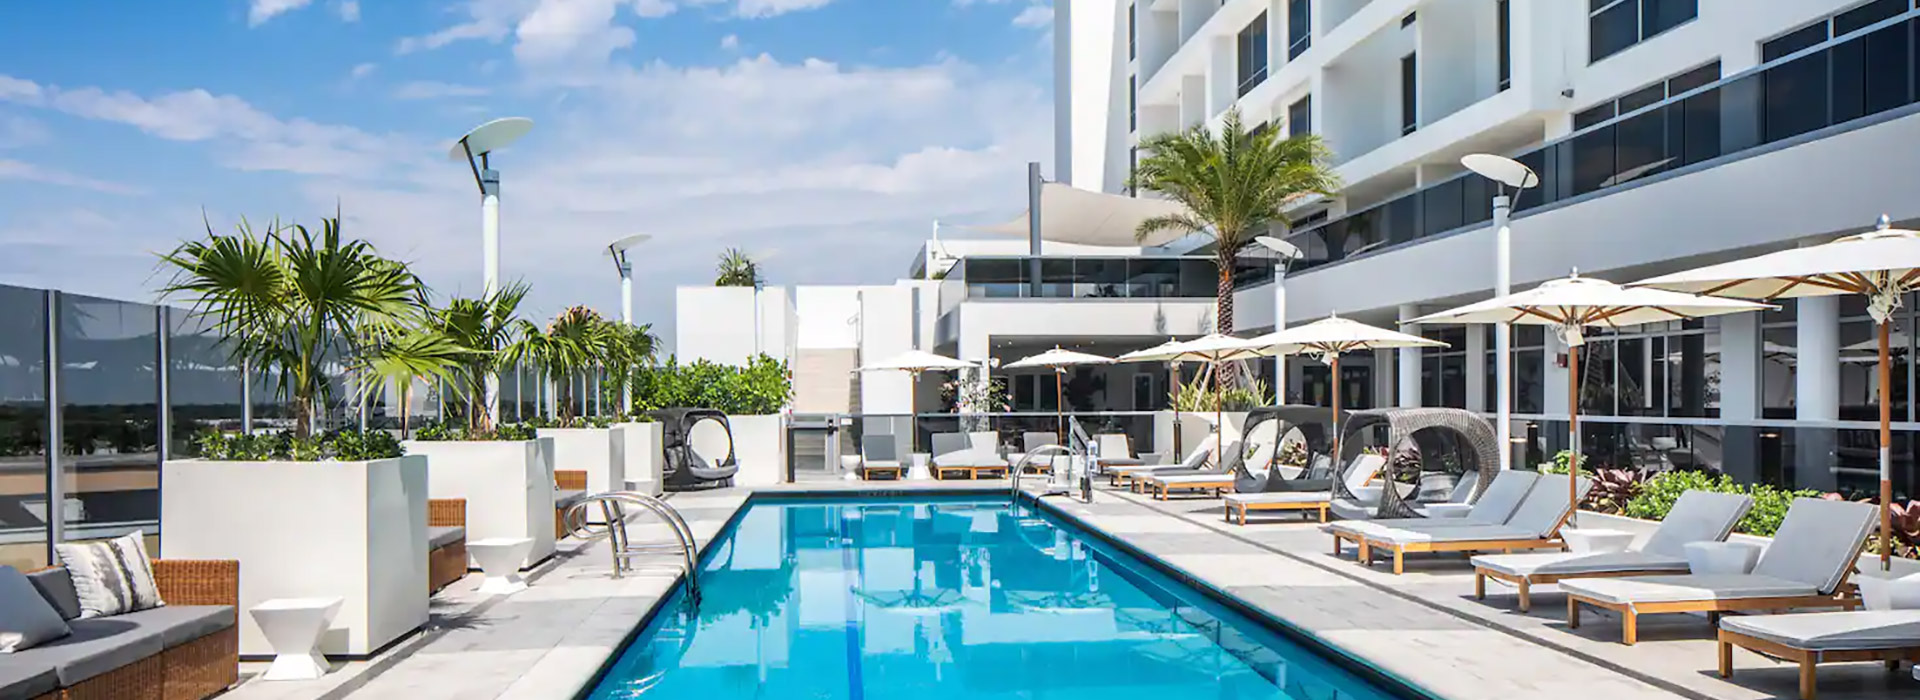 Hilton Aventura Miami Pool